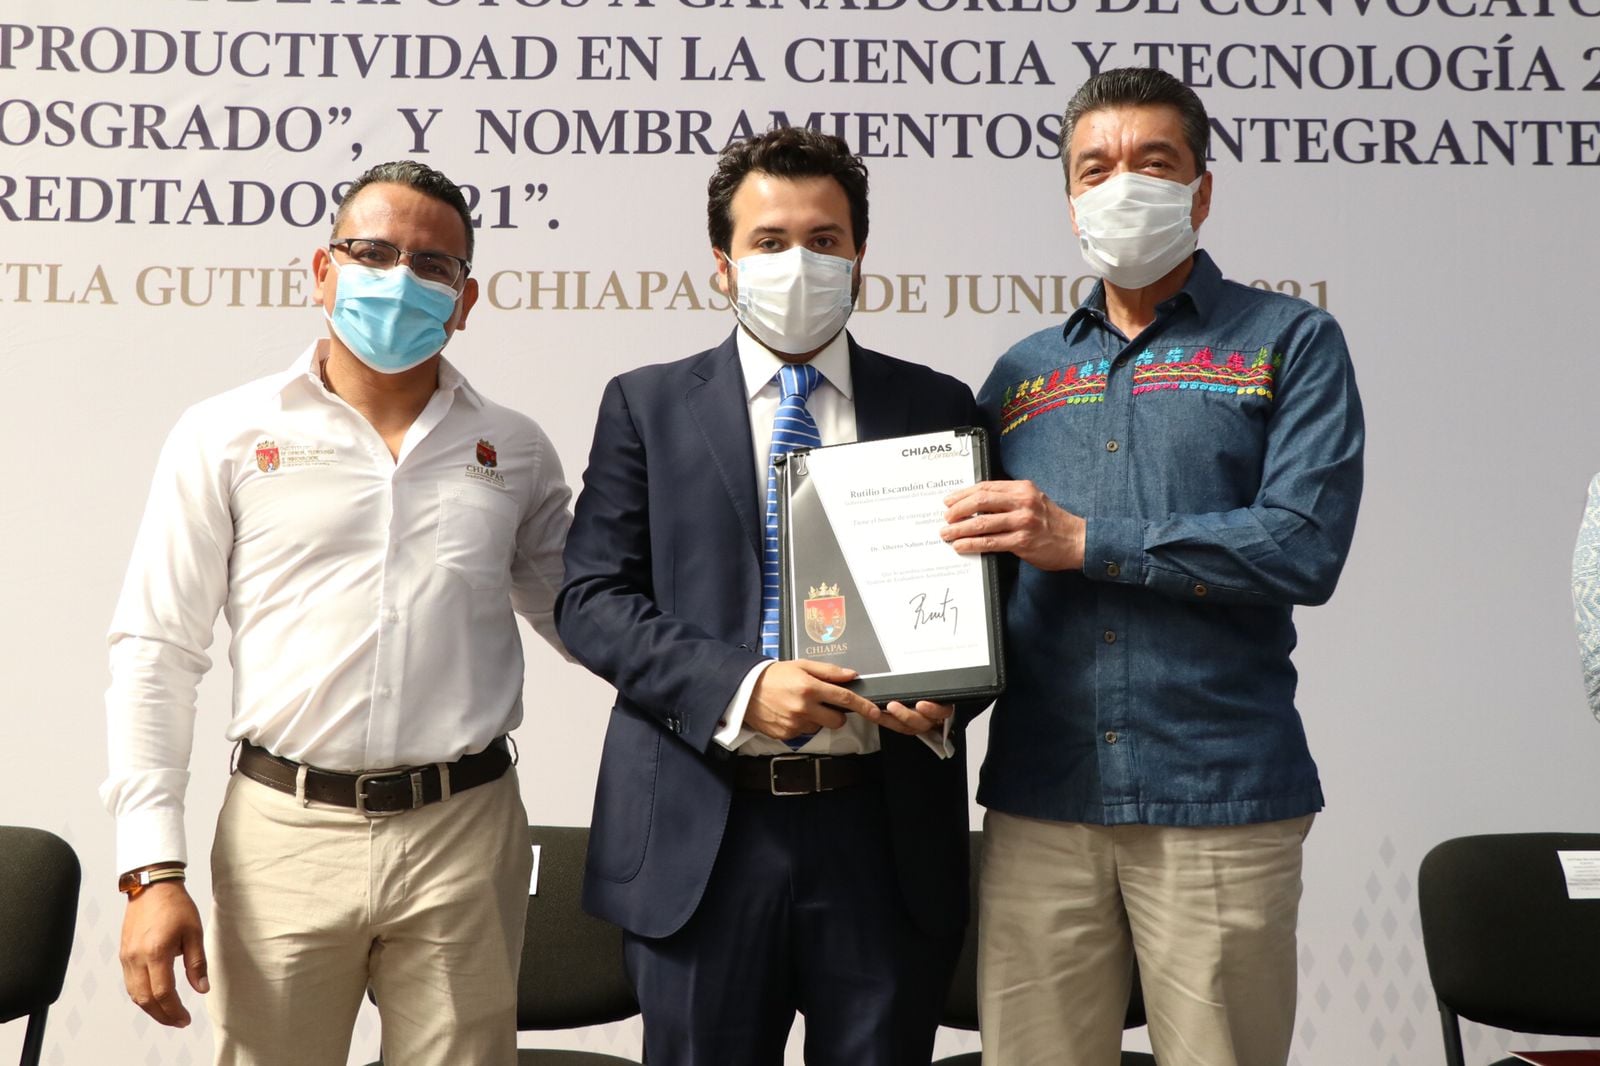 En Chiapas invertimos en el fortalecimiento de la vocación científica y tecnológica: Rutilio Escandón